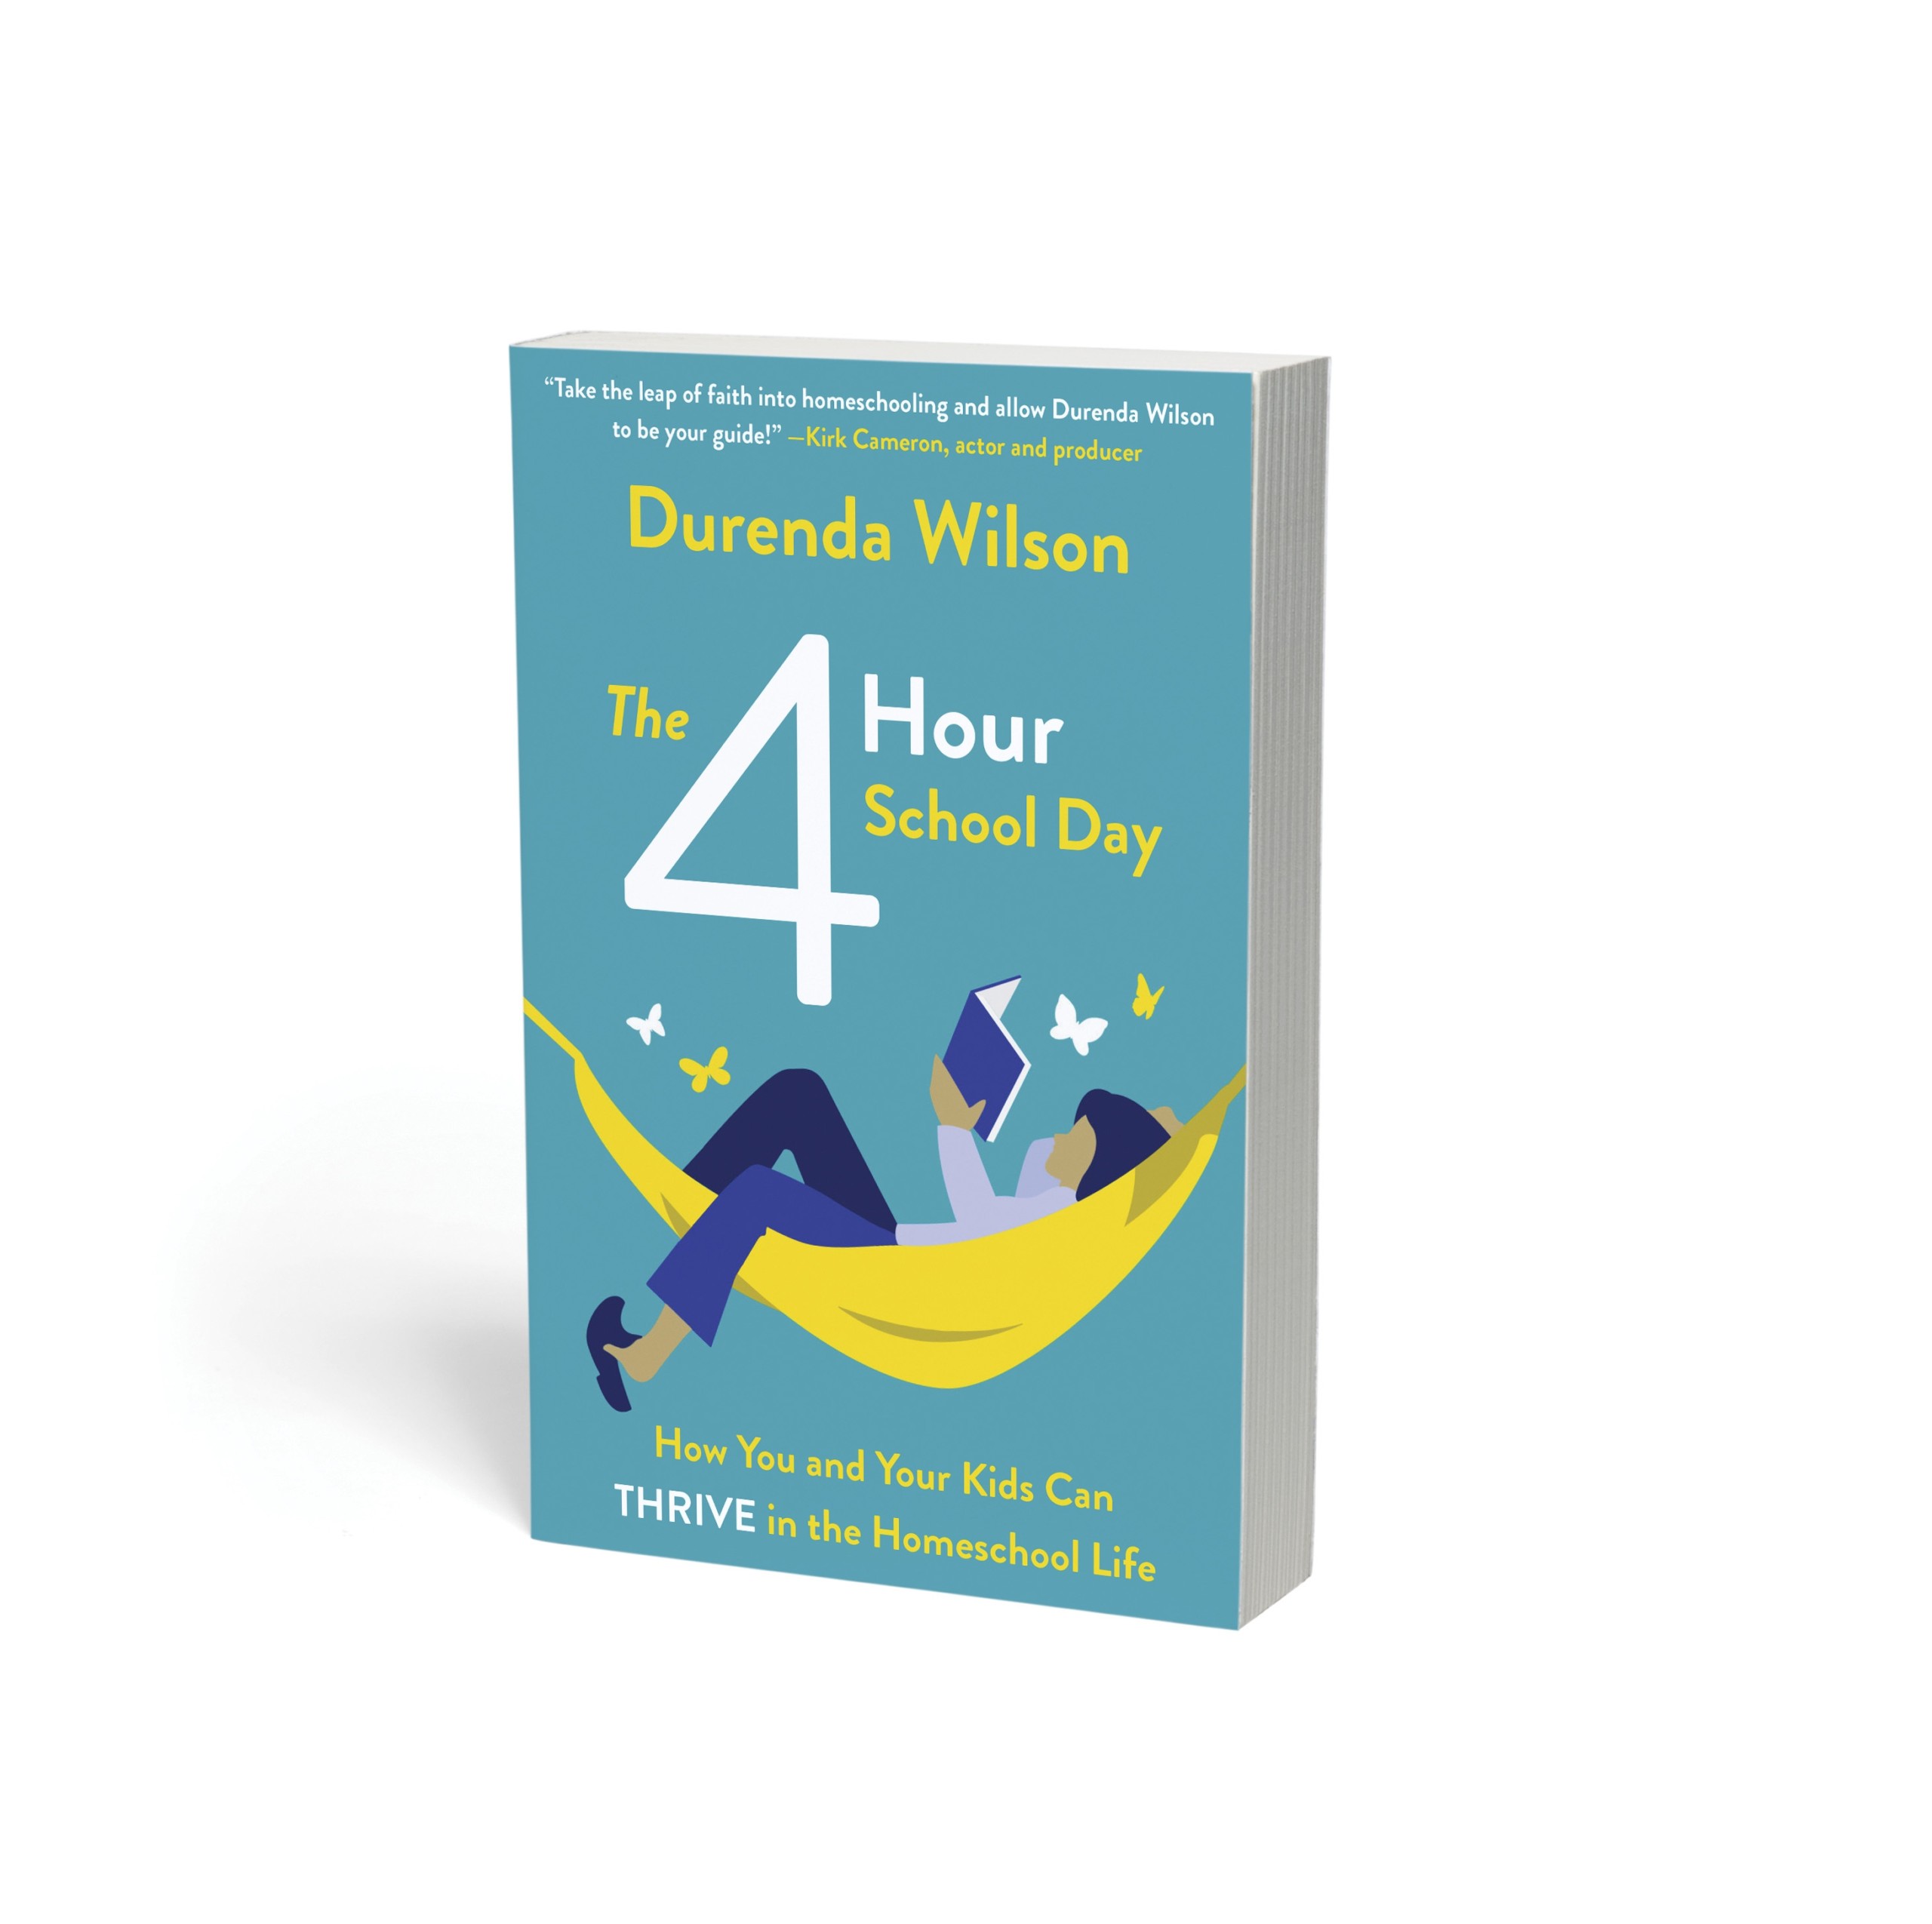 The 4 Hour School Day by Durenda Wilson